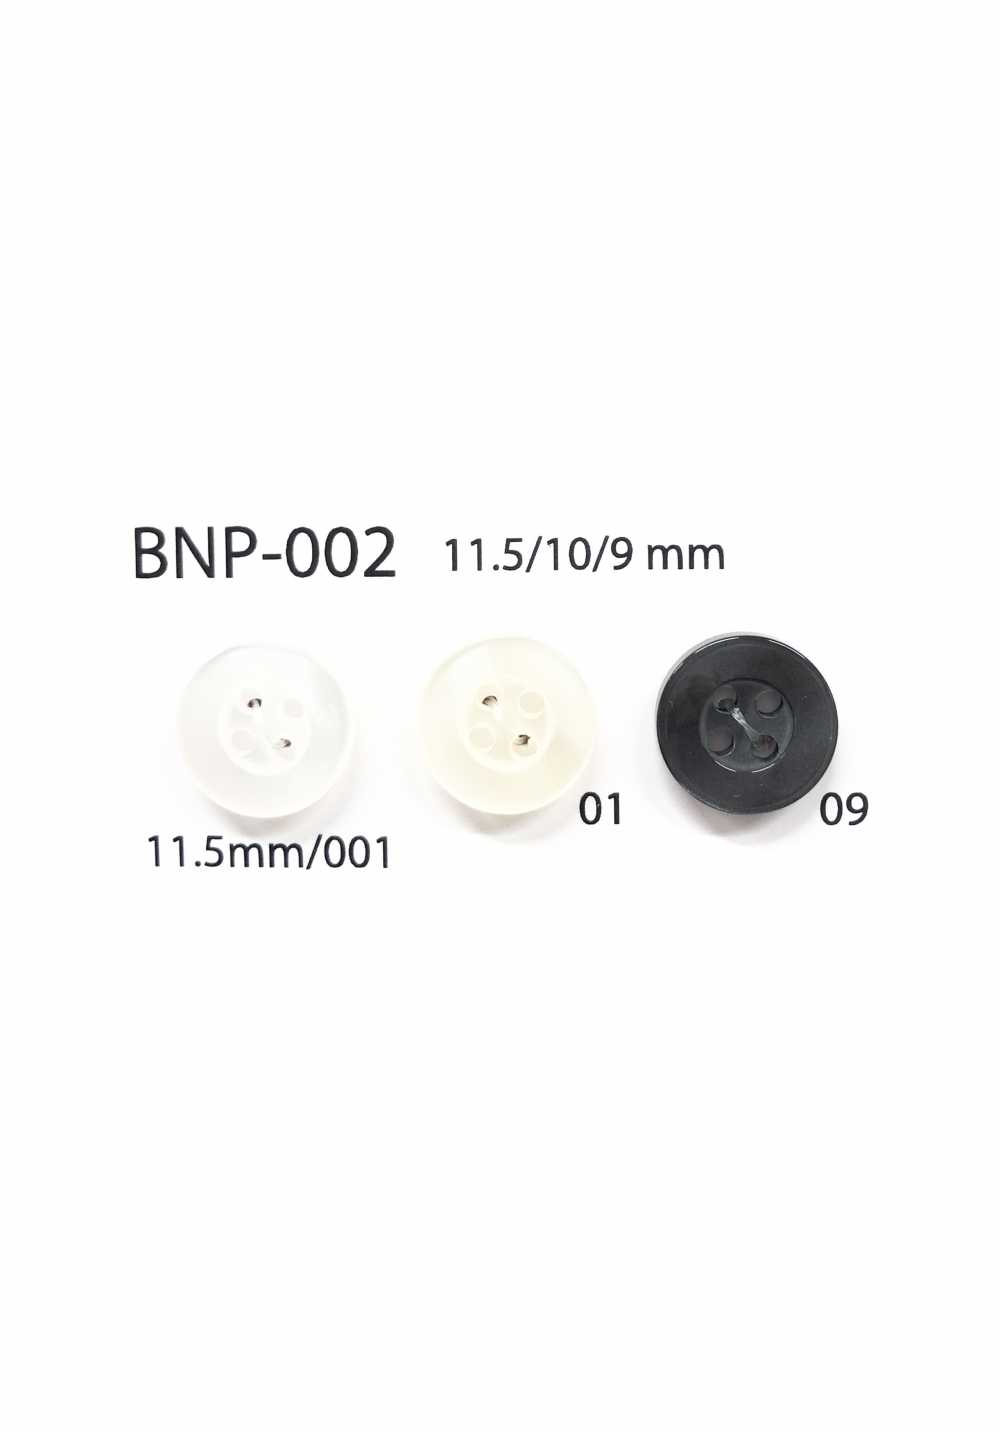 BNP-002 Botón De Biopoliéster De 4 Orificios IRIS